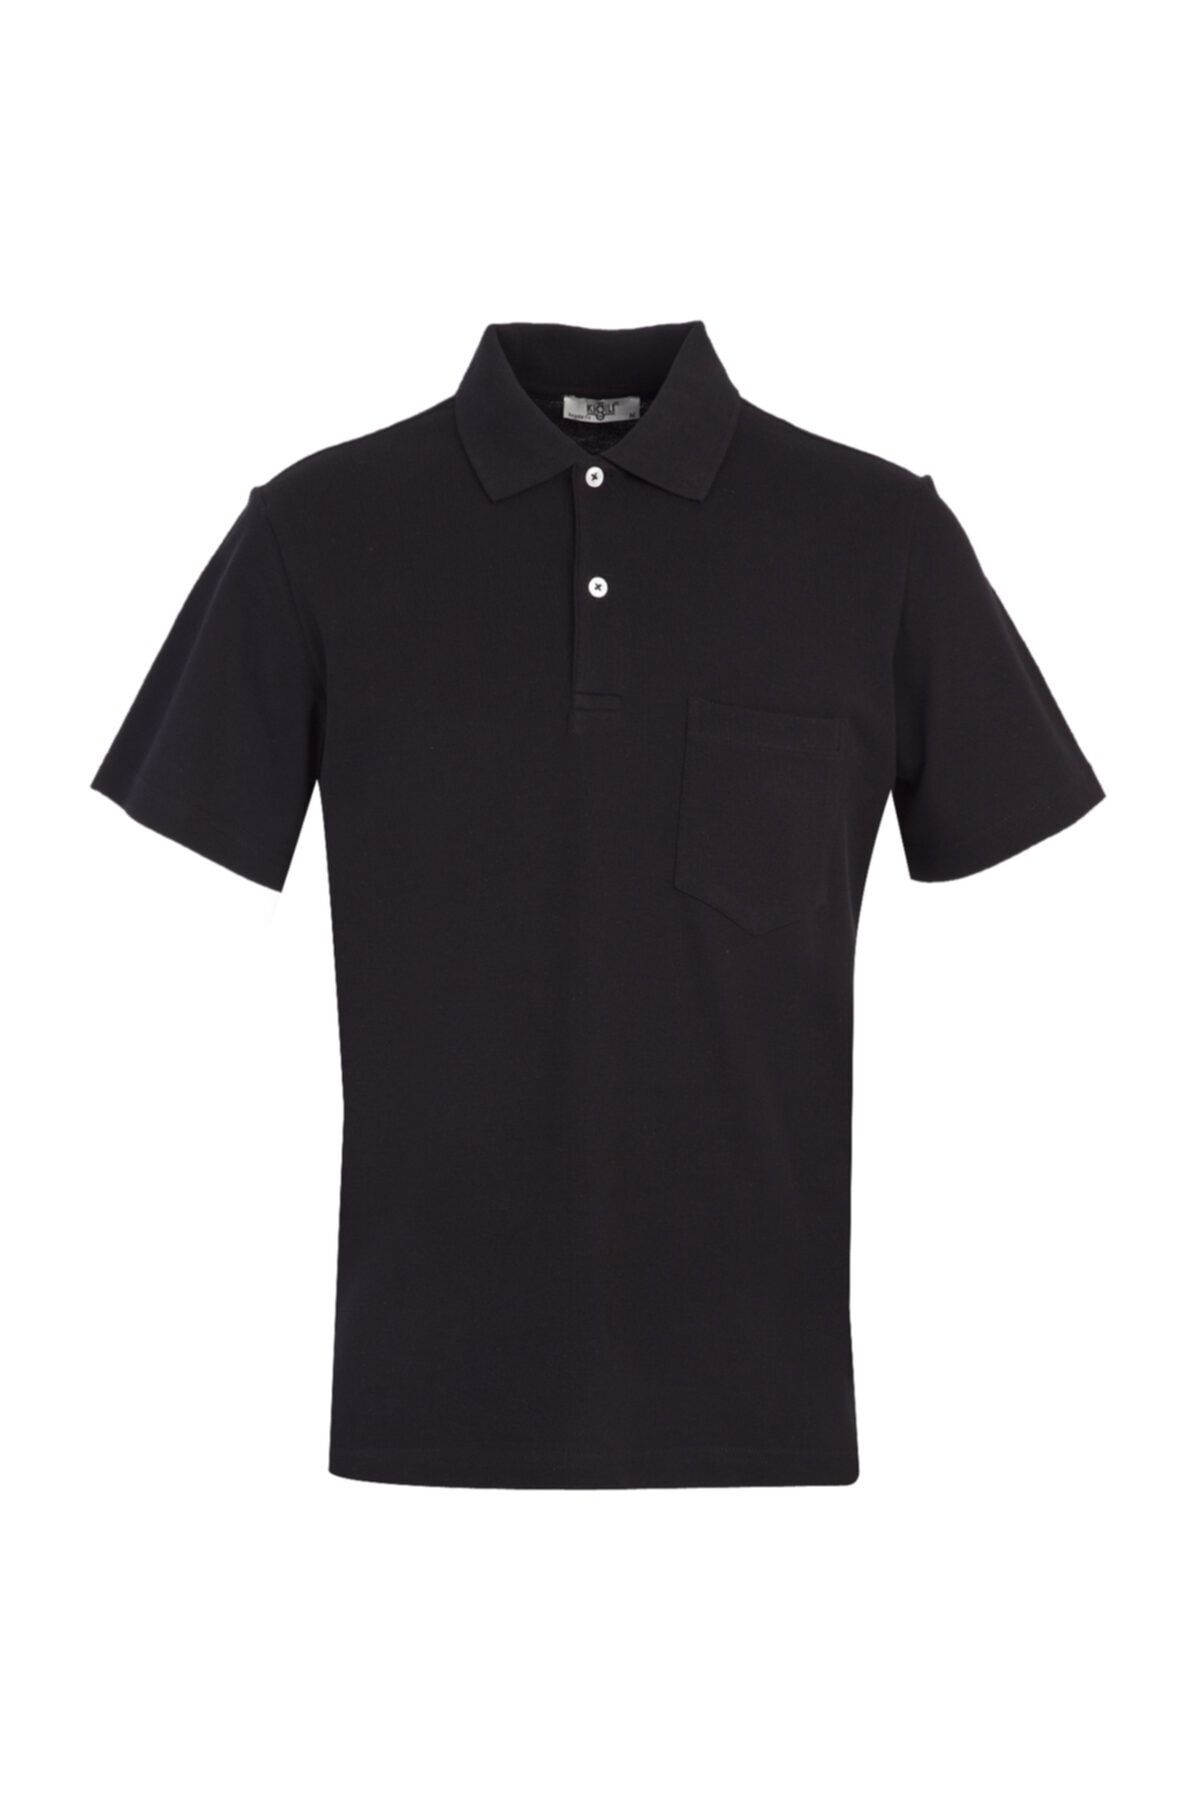 Kiğılı Erkek %100 Pamuk   Koyu Siyah Polo Yaka Regular Fit Tişört